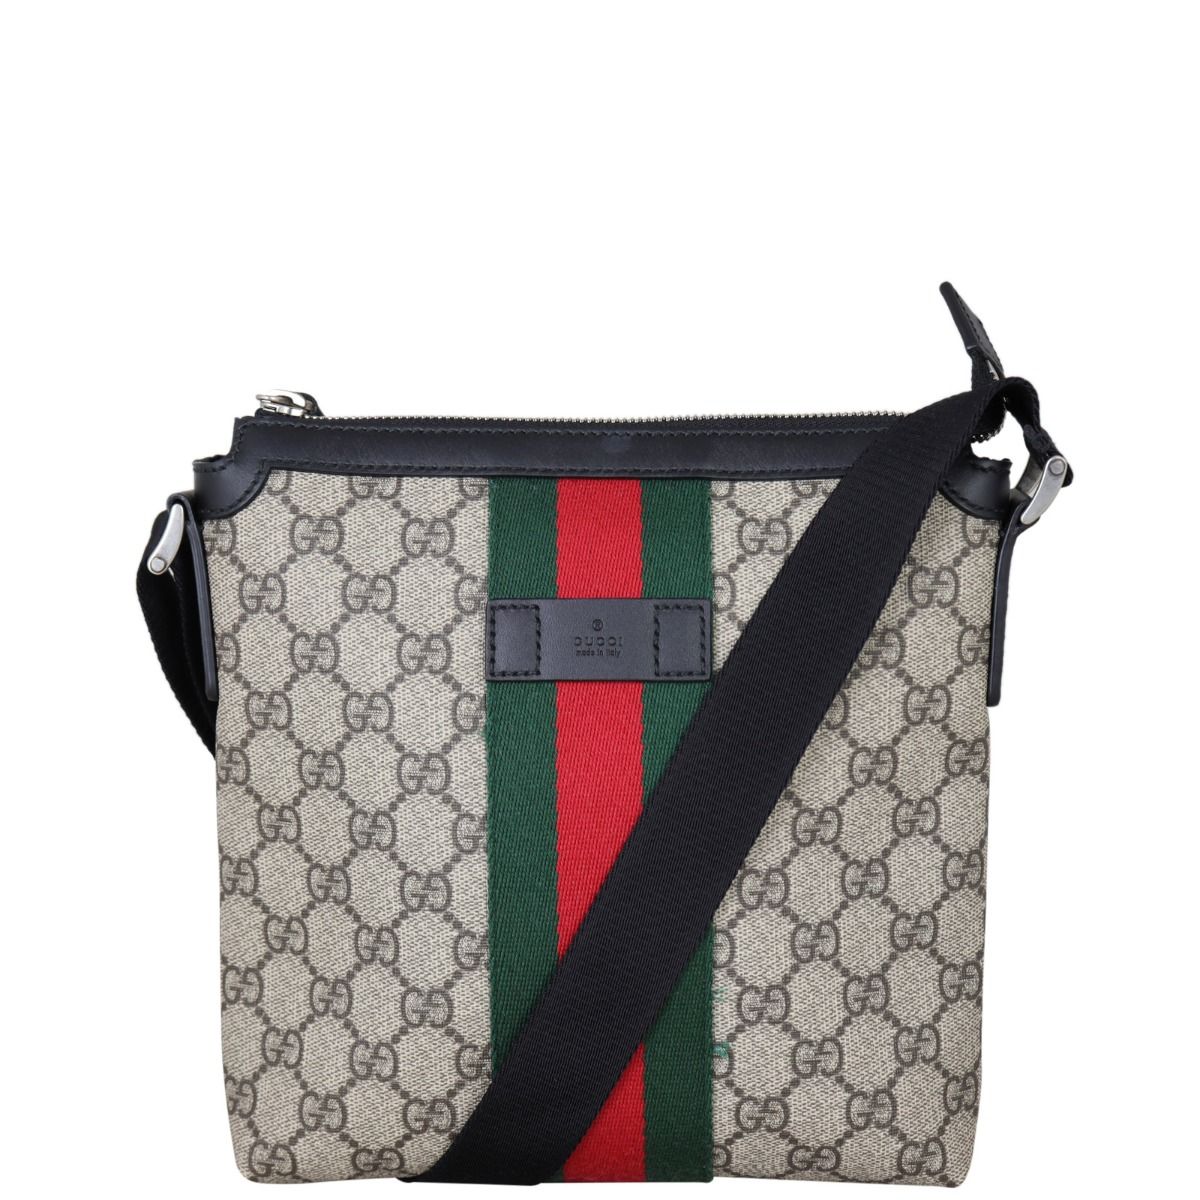 Gucci GG Supreme Web Messenger Bag